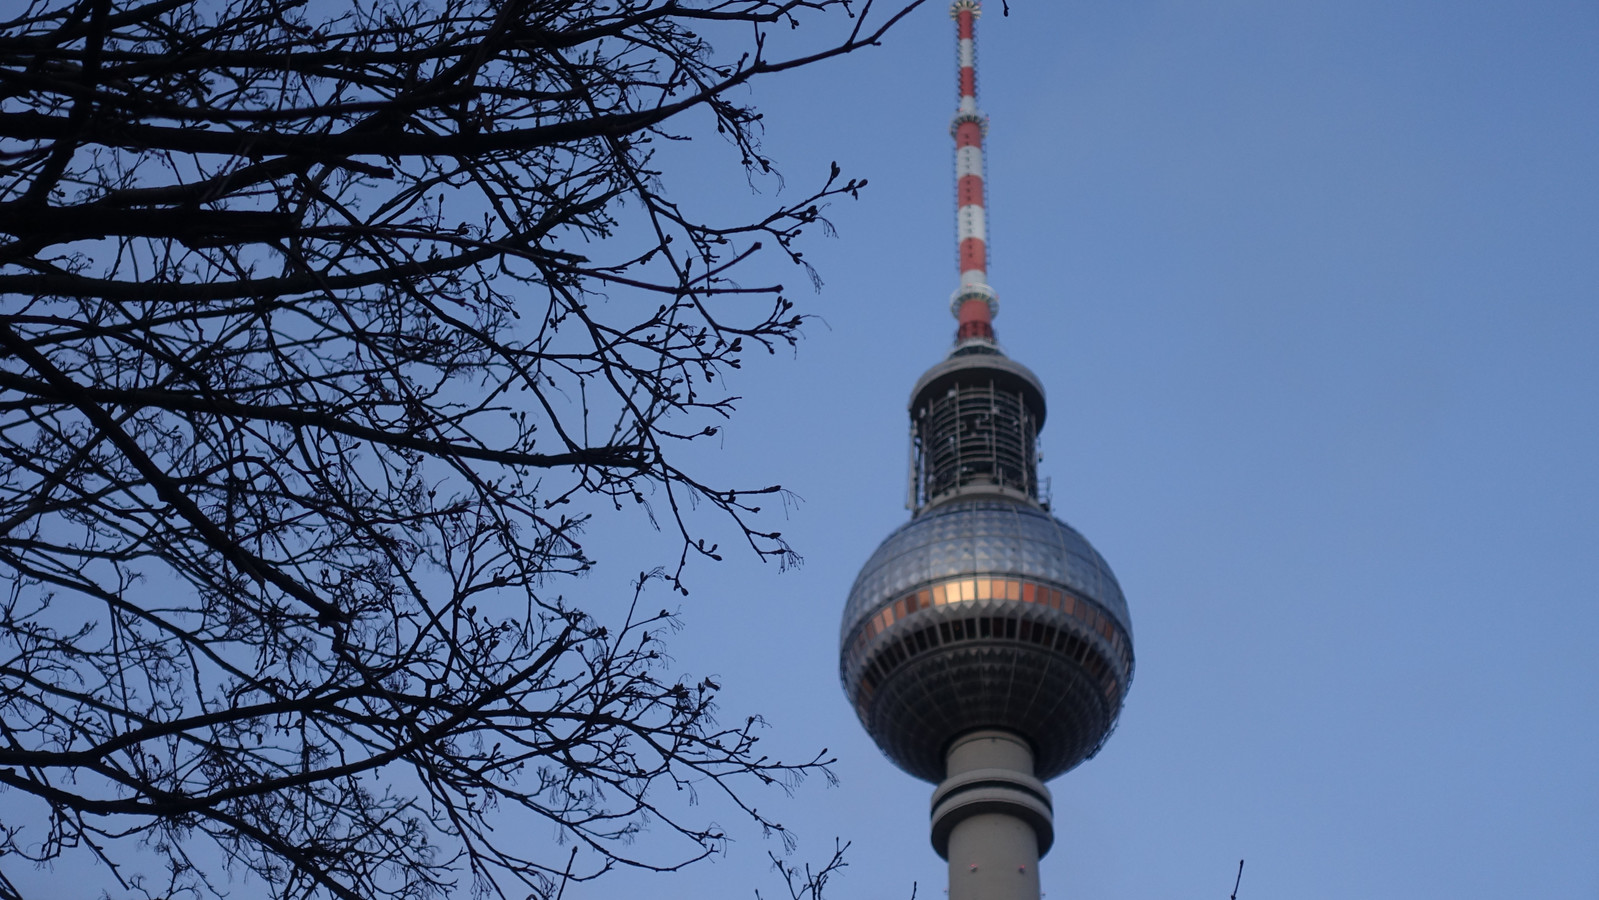 Berliner Fernsehturm (TV Tower),  Alexanderplatz, Berlin